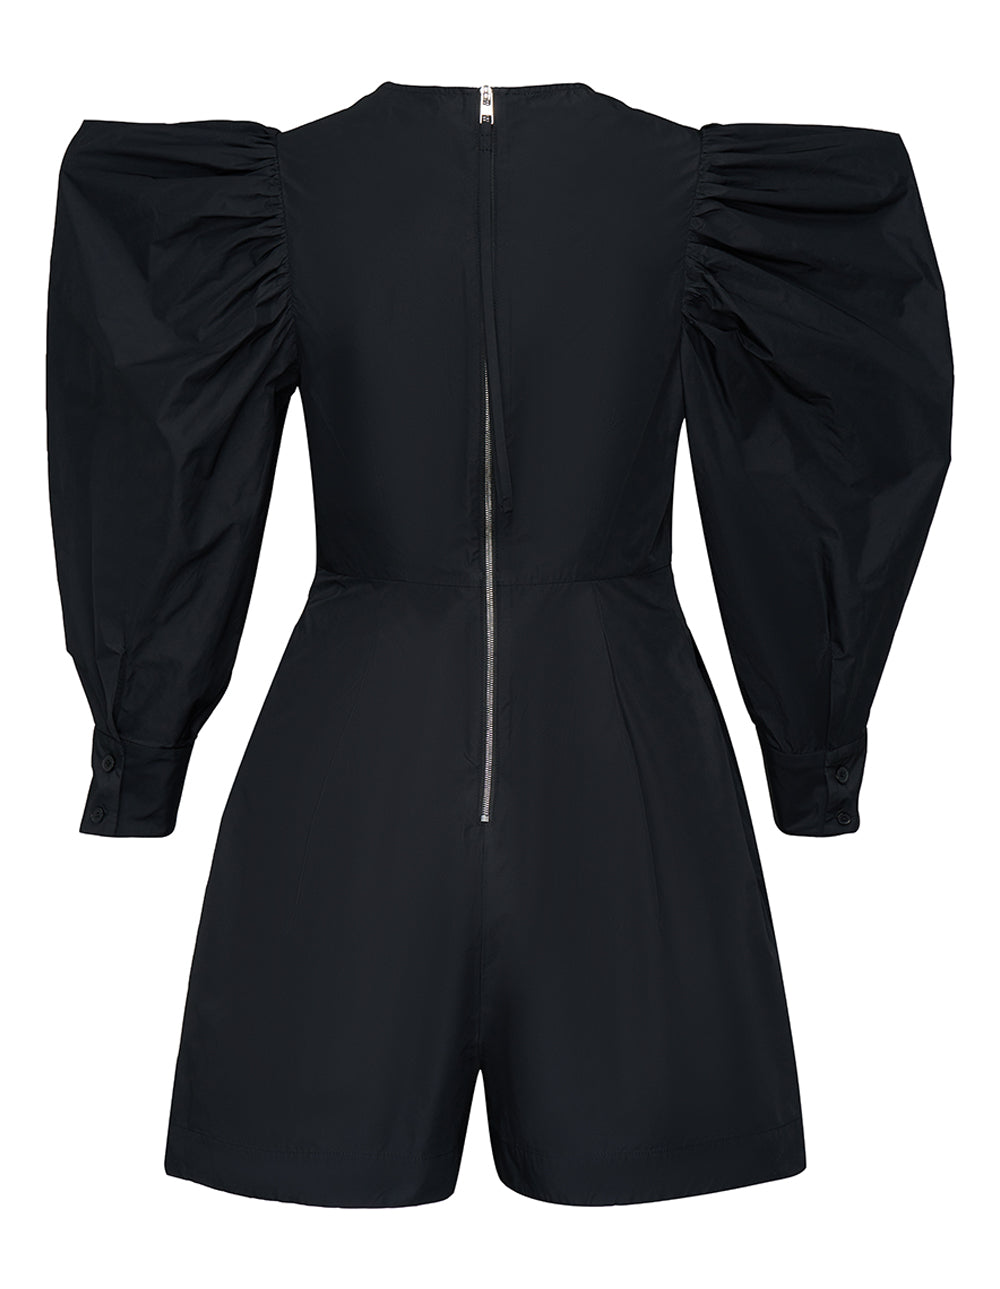 Silky Parachute Short Jumpsuit (Black)